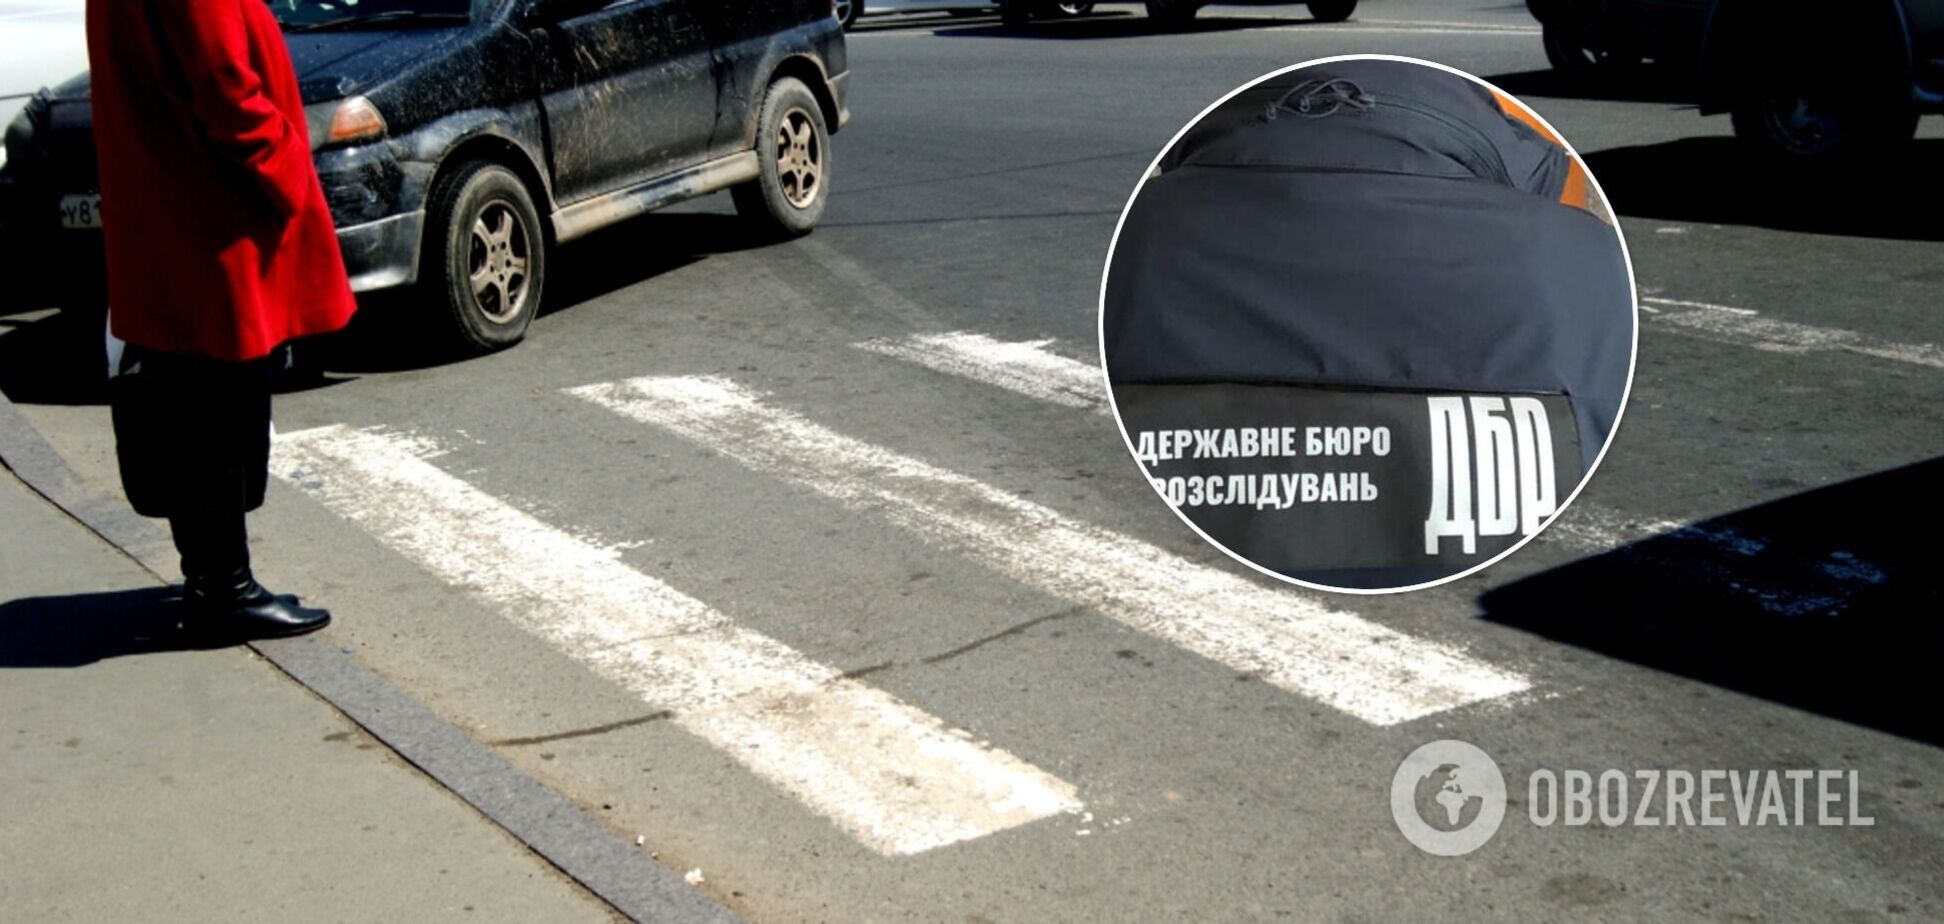 В Одессе автомобиль Нацполиции сбил женщину на пешеходном переходе: выяснились подробности